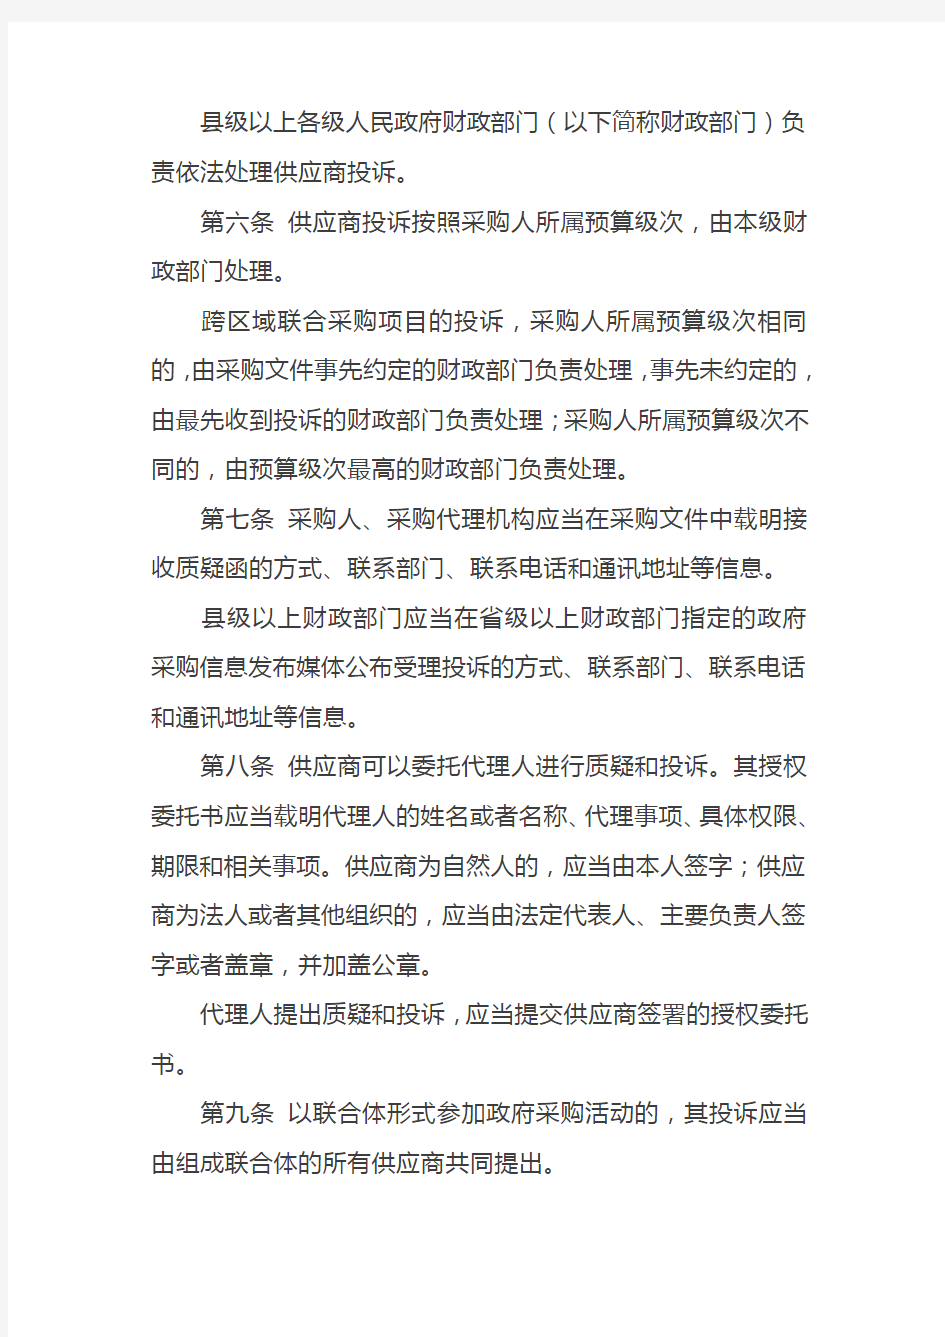 中华人民共和国财政部令第94号——政府采购质疑和投诉办法